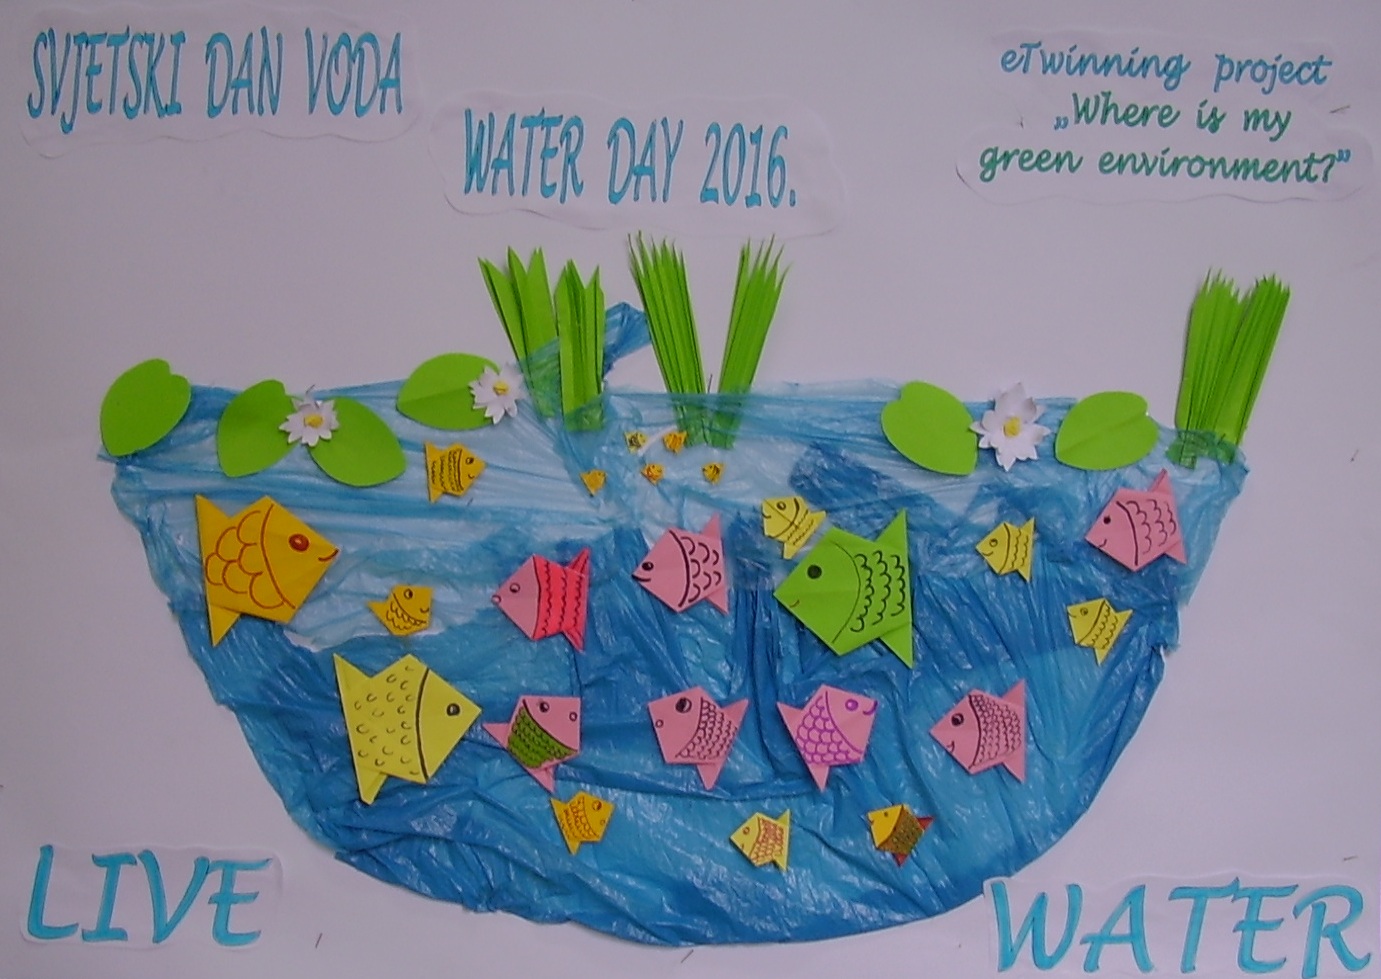 Svjetski dan voda - World Water Day 2016